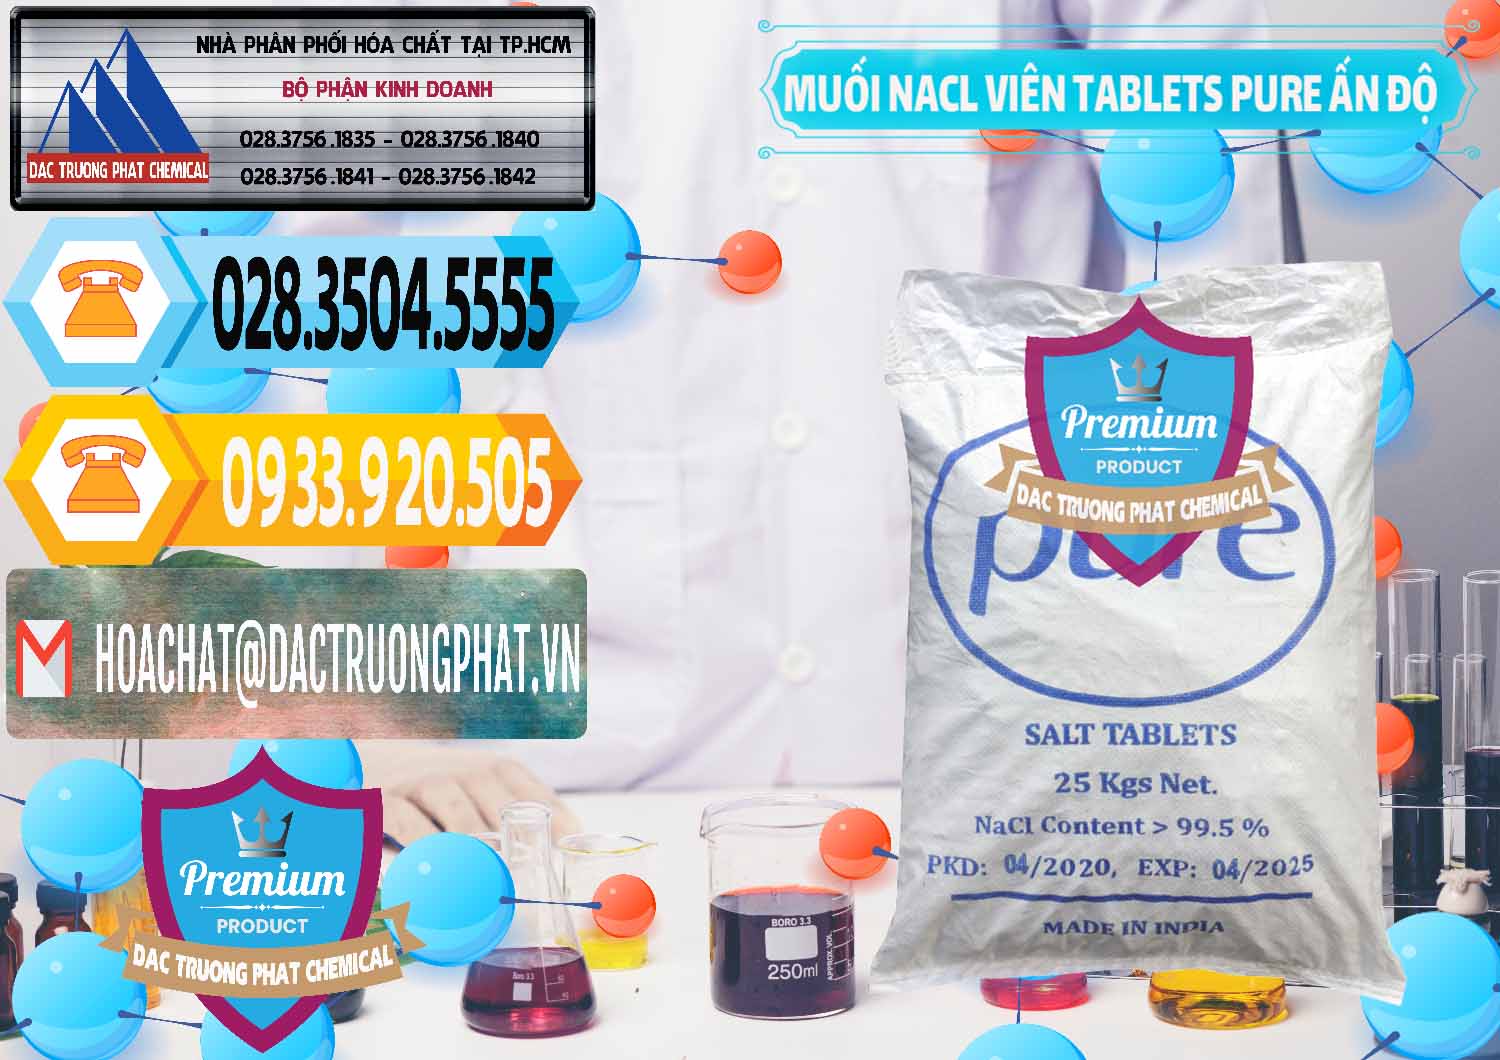 Công ty chuyên kinh doanh và bán Muối NaCL – Sodium Chloride Dạng Viên Tablets Pure Ấn Độ India - 0294 - Chuyên cung cấp và phân phối hóa chất tại TP.HCM - hoachattayrua.net